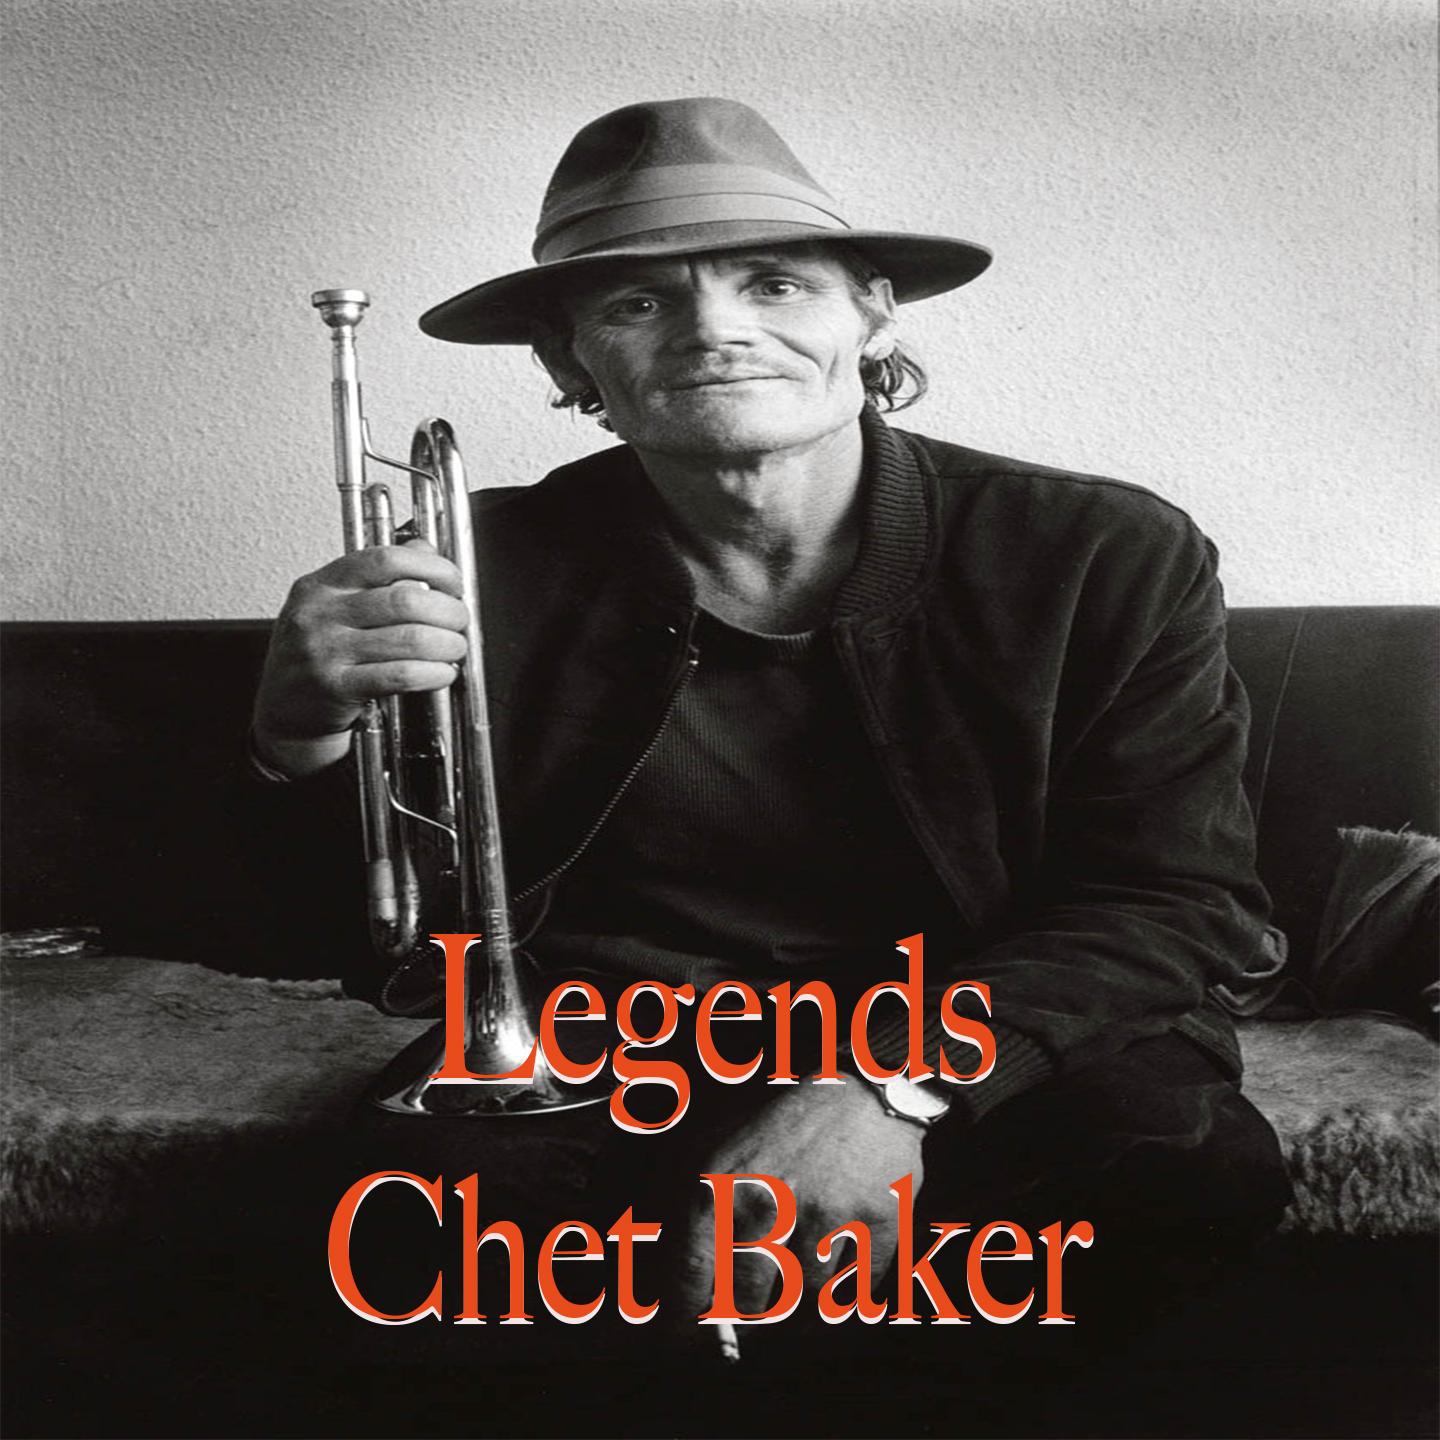 Legends... Chet Baker (Instrumental)